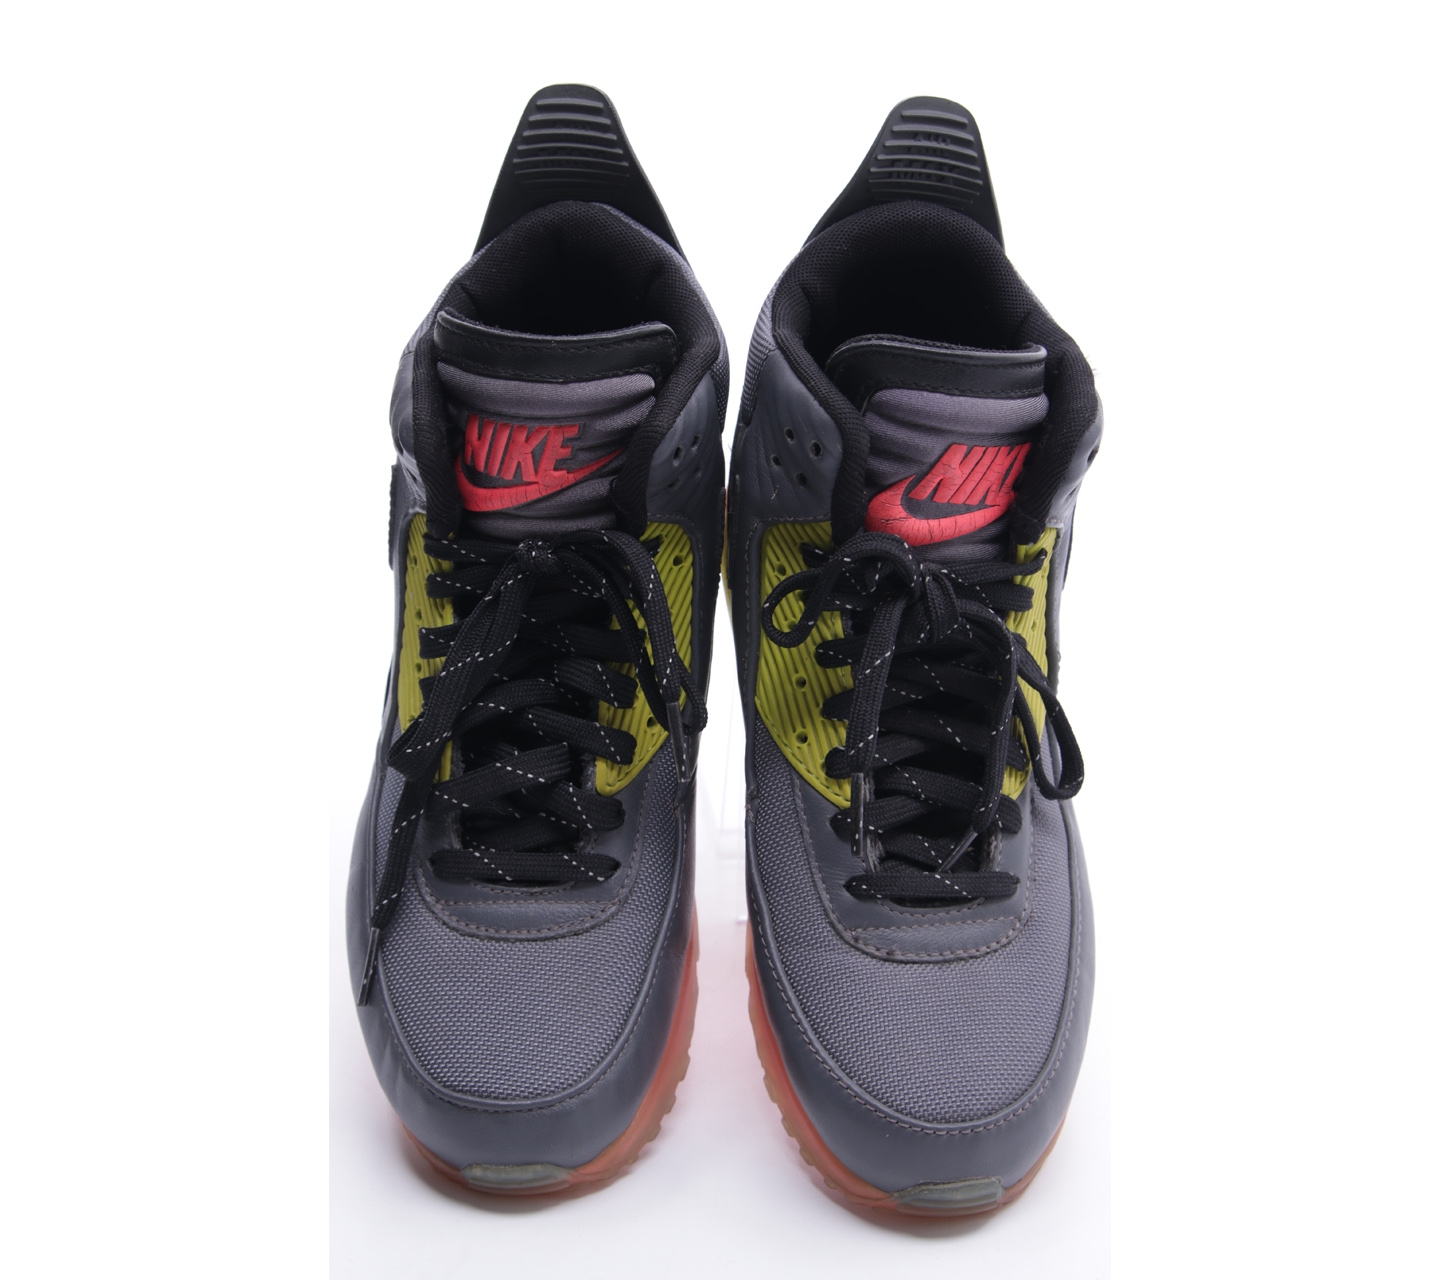 Nike Dark Grey Air Max 90 SneakerBoot Ice Sneakers